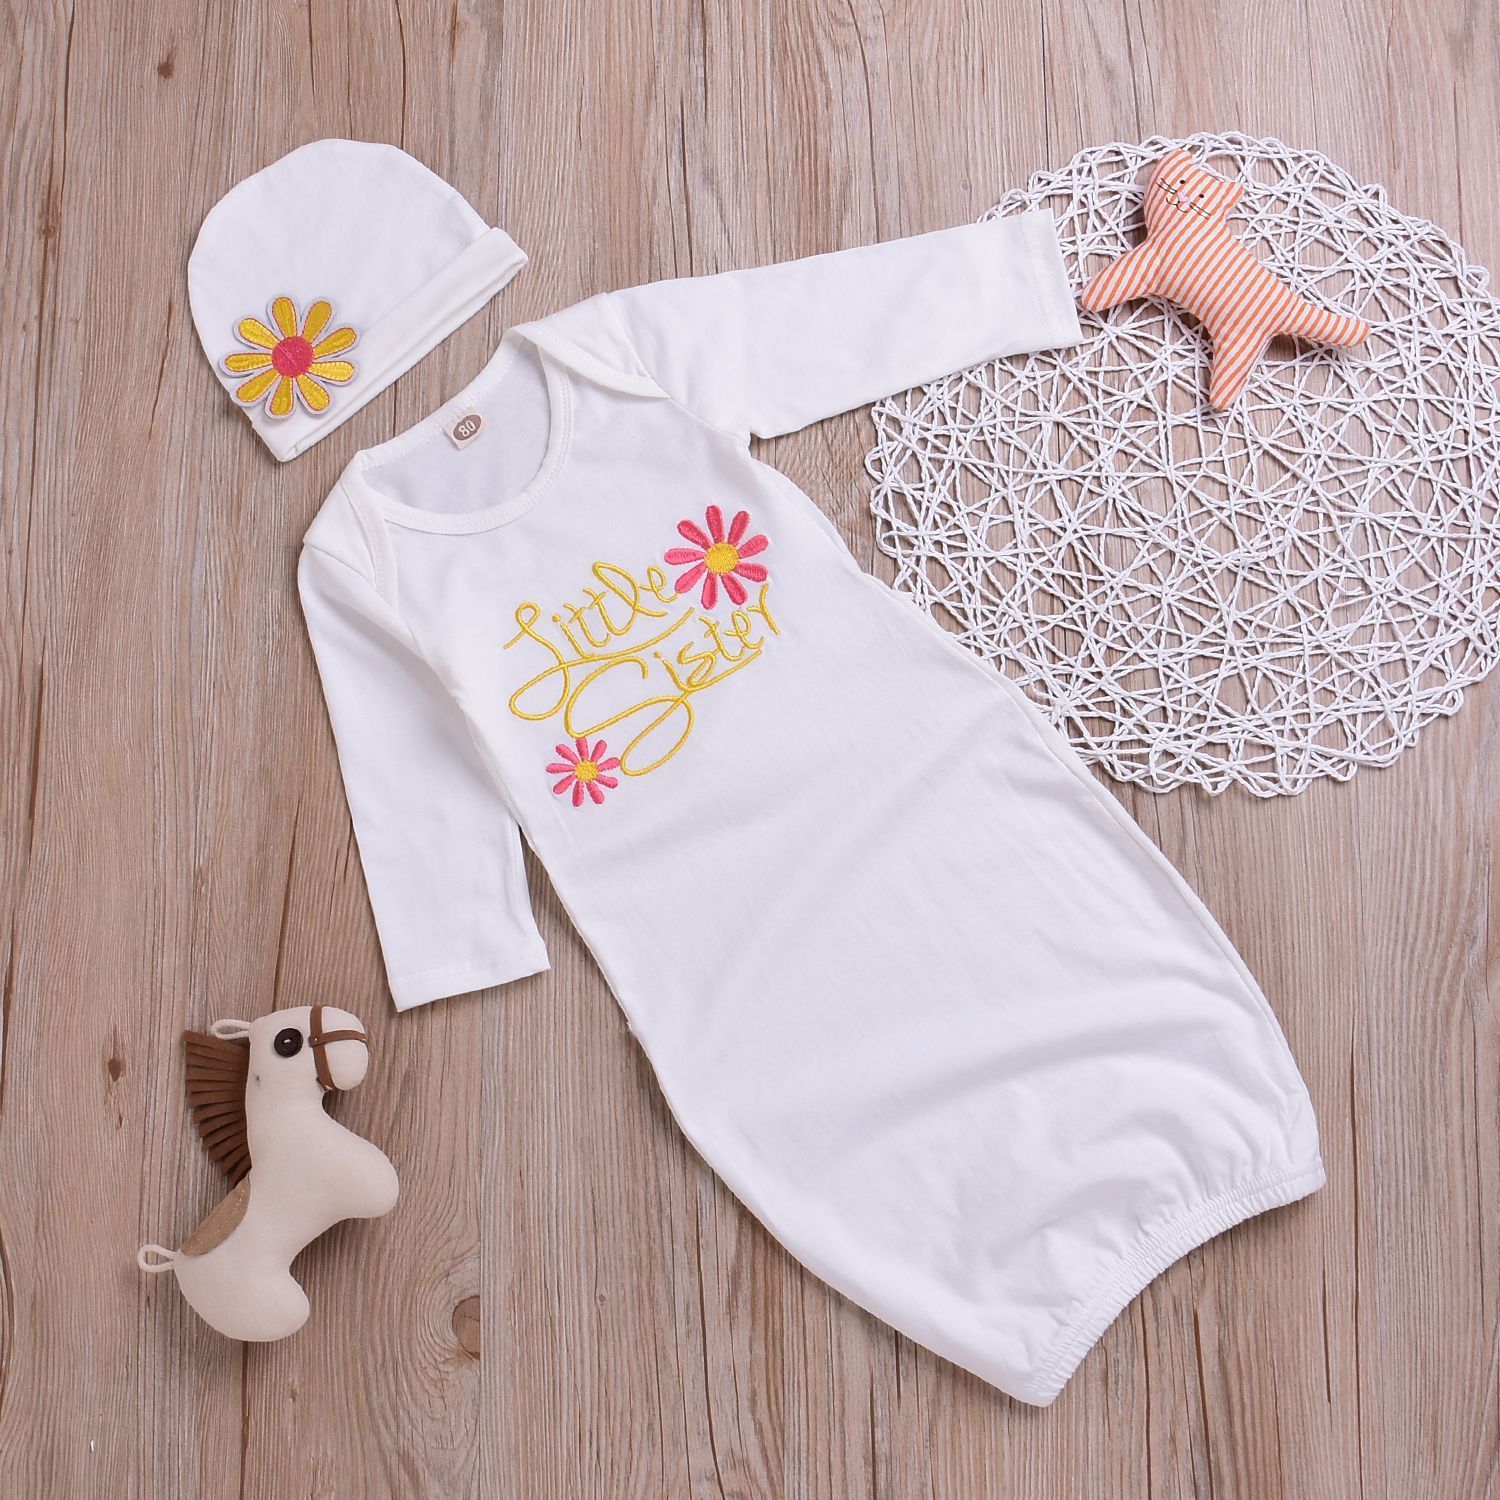 Pijama y gorro con estampado floral para bebé recién nacido Little Sister